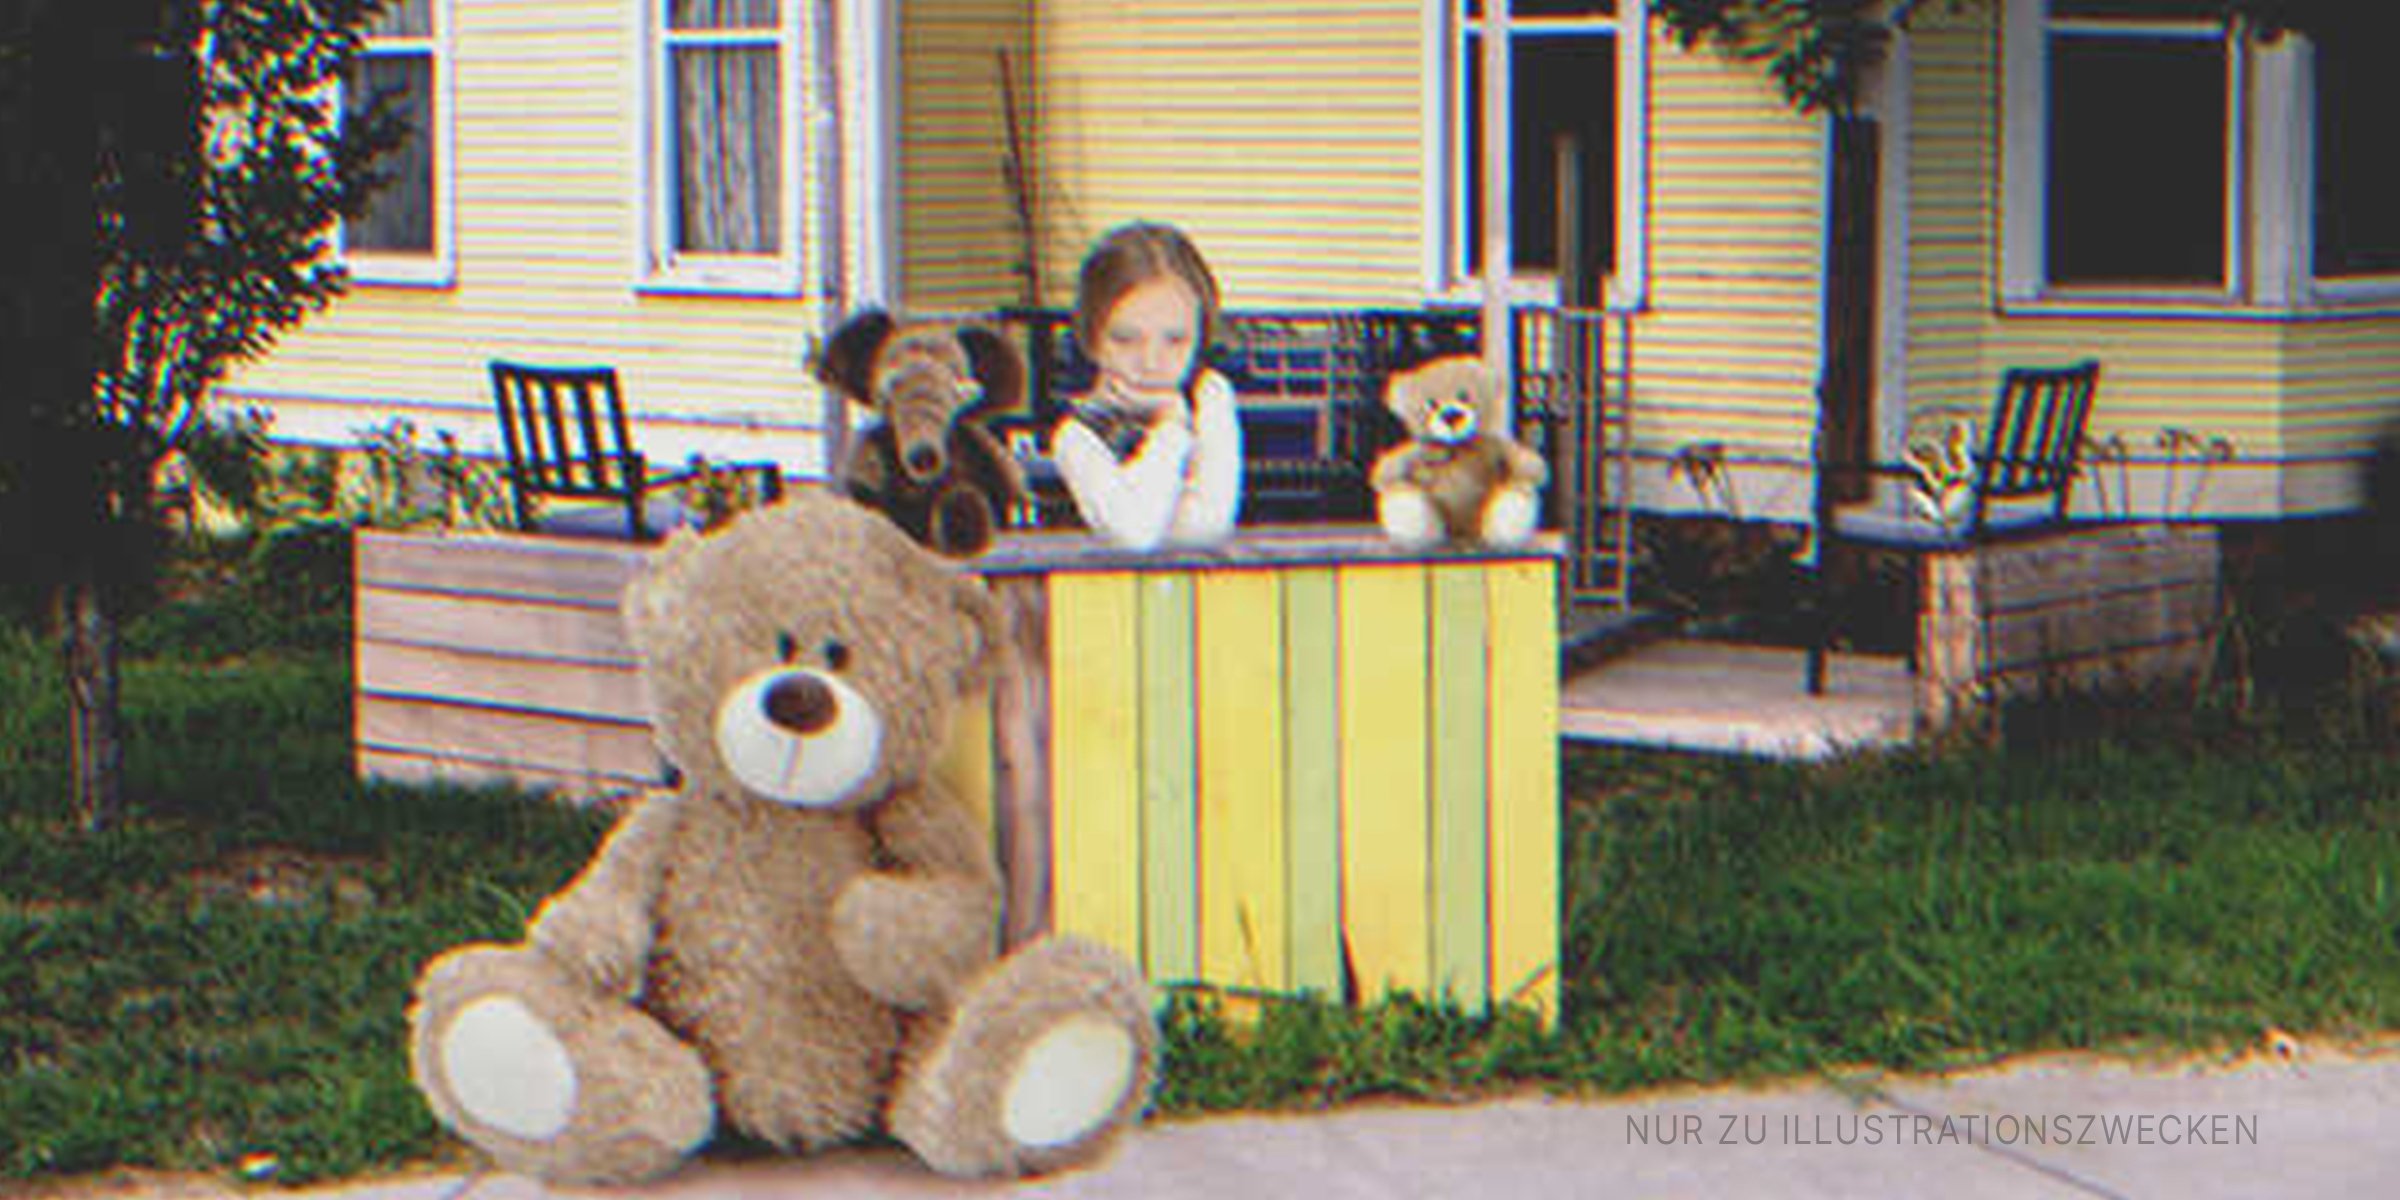 Mädchen und großer Teddy an kleinem Verkaufsstand | Quelle: Shutterstock